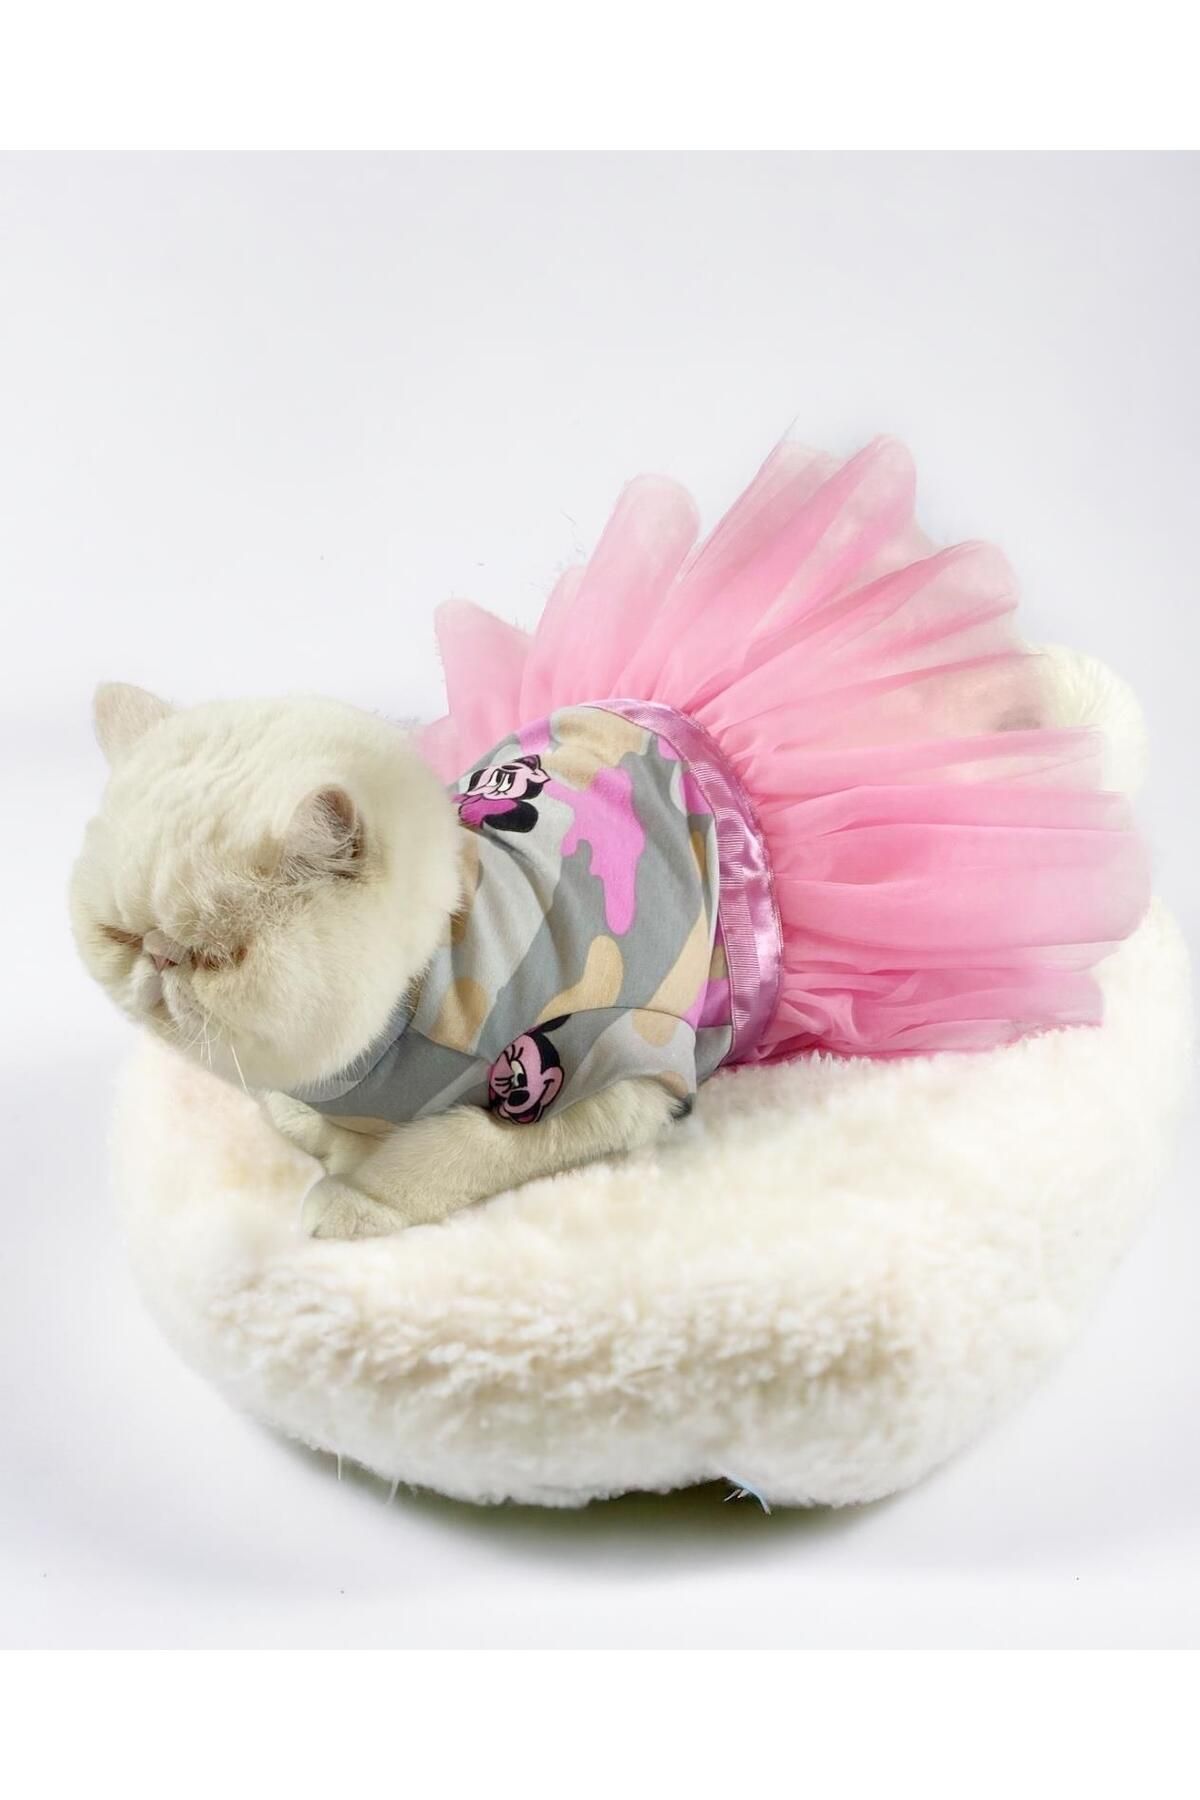 Kemique Pinky Minnie Polar Tütülü Kedi Elbisesi, Kıyafeti Tutu